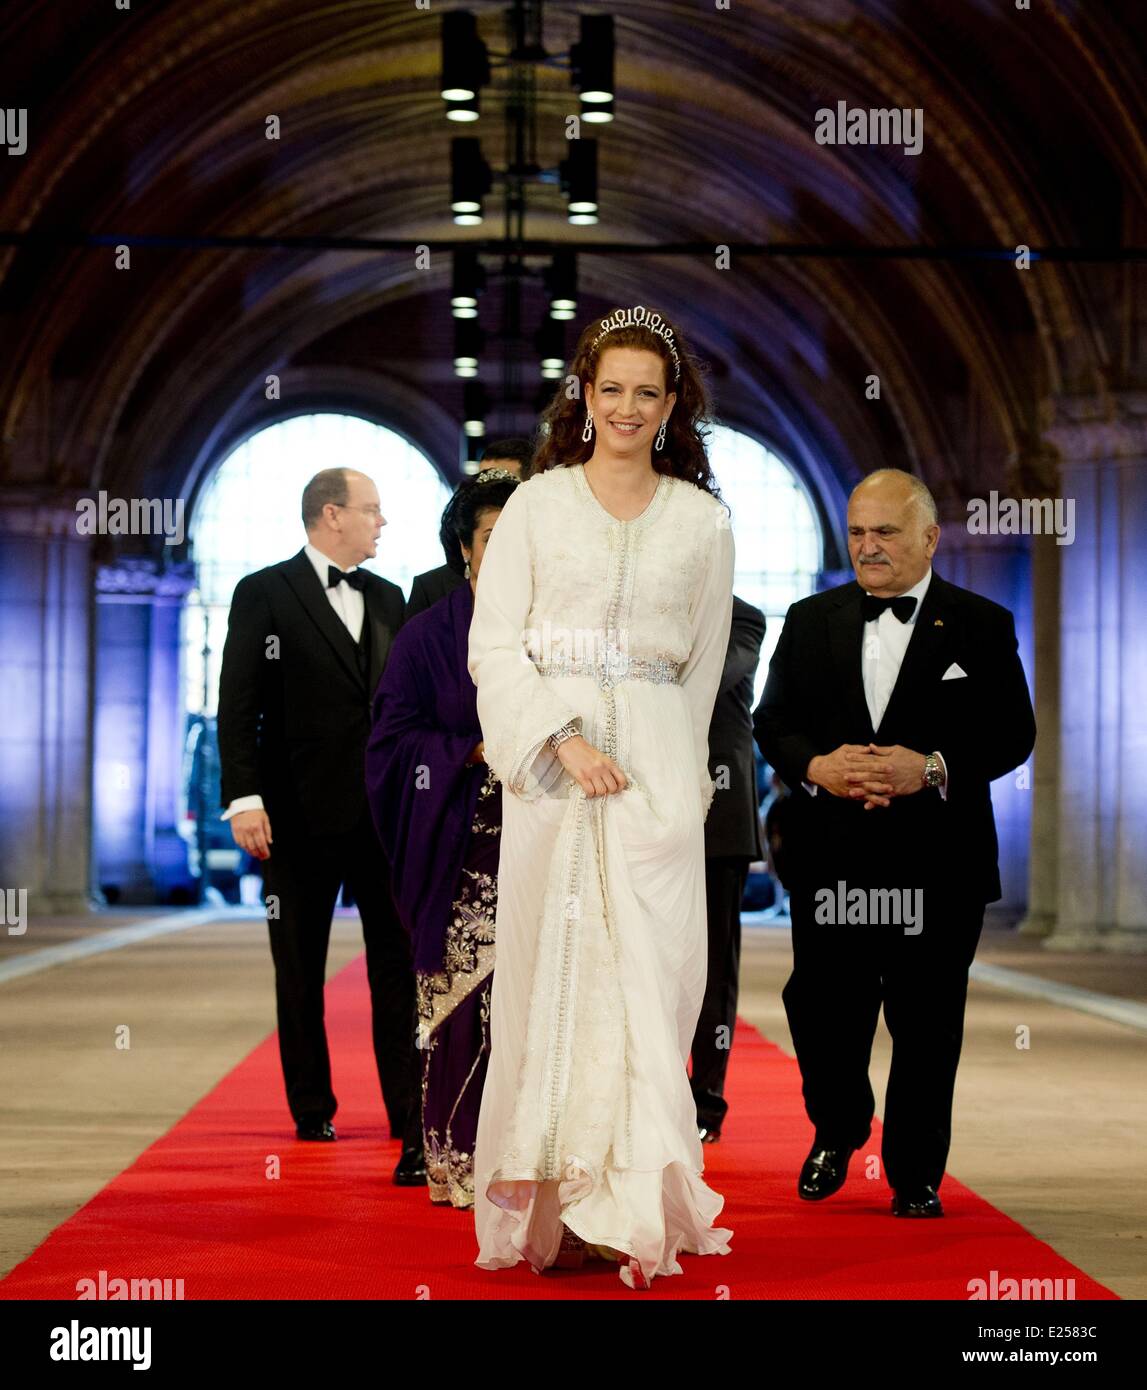 La Reine Beatrix des Pays-Bas organise un dîner de gala en avant de son abdication comprend : la Princesse Lalla Salma Où : Amsterdam, Pays-Bas Quand : 29 Avr 2013 Banque D'Images